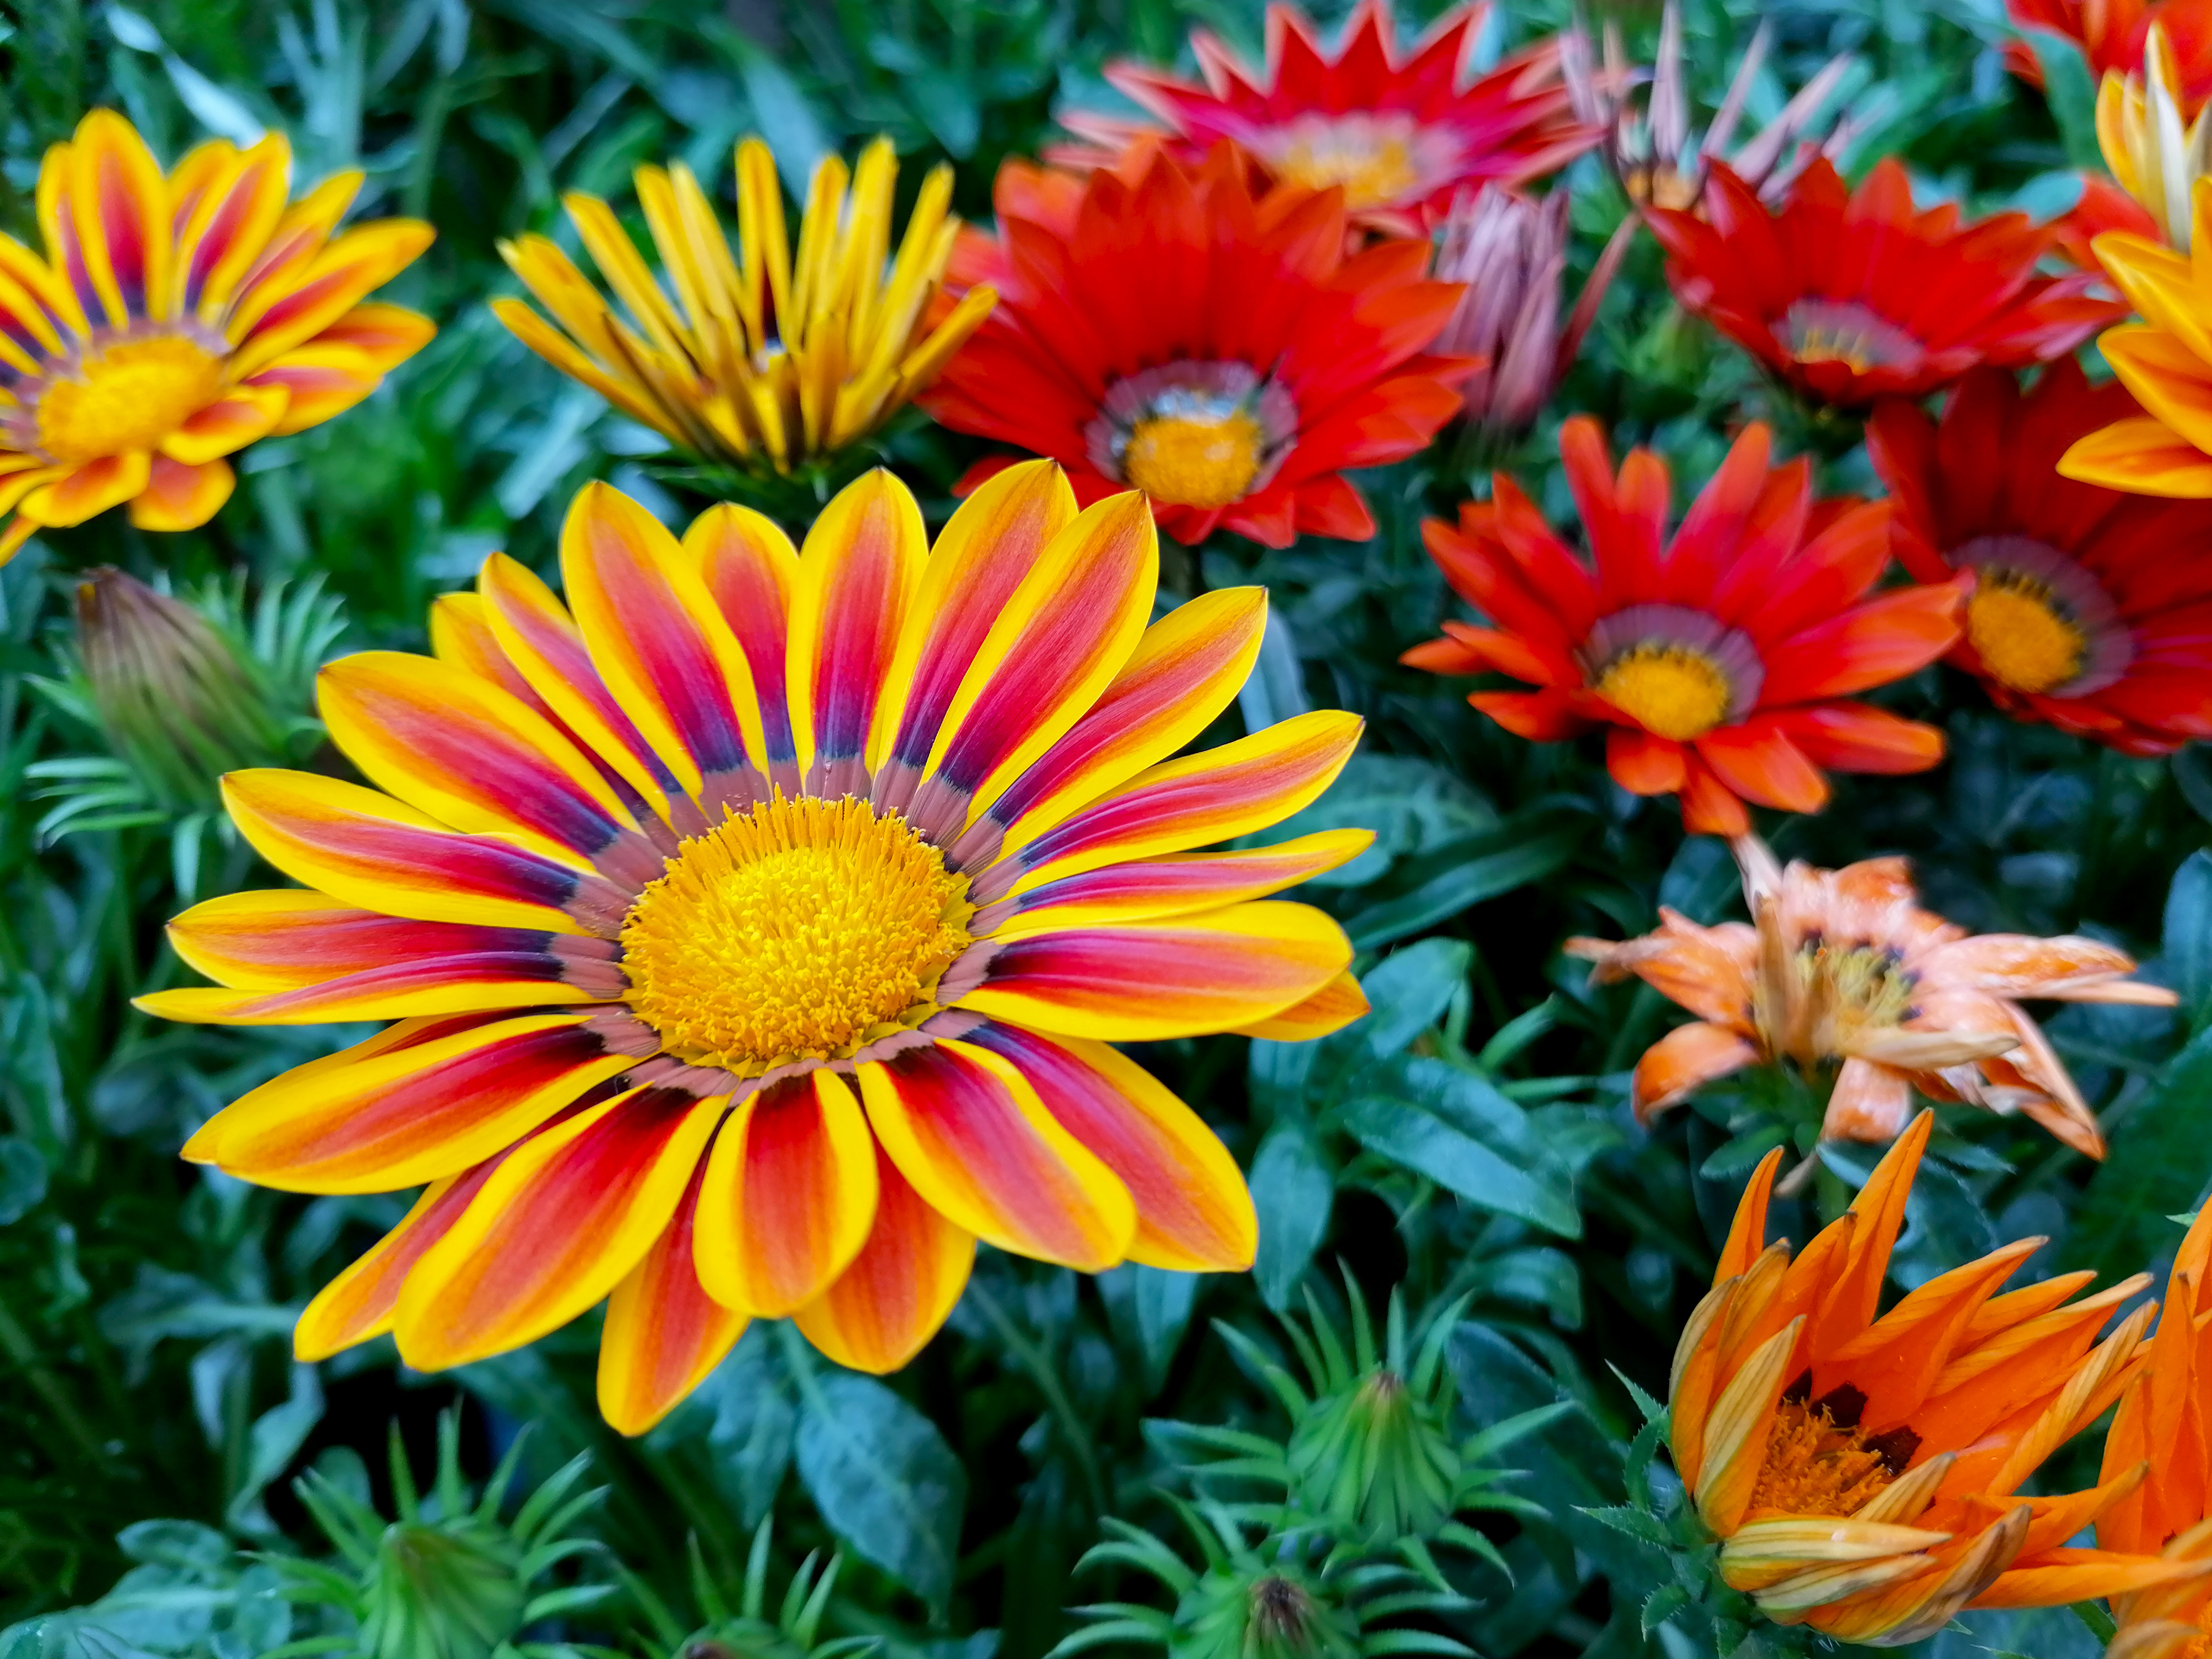 Le gazania, une fleur très colorée qui ne craint pas la sécheresse ! Copyright (c) 2021 BeataGFX/Shutterstock.